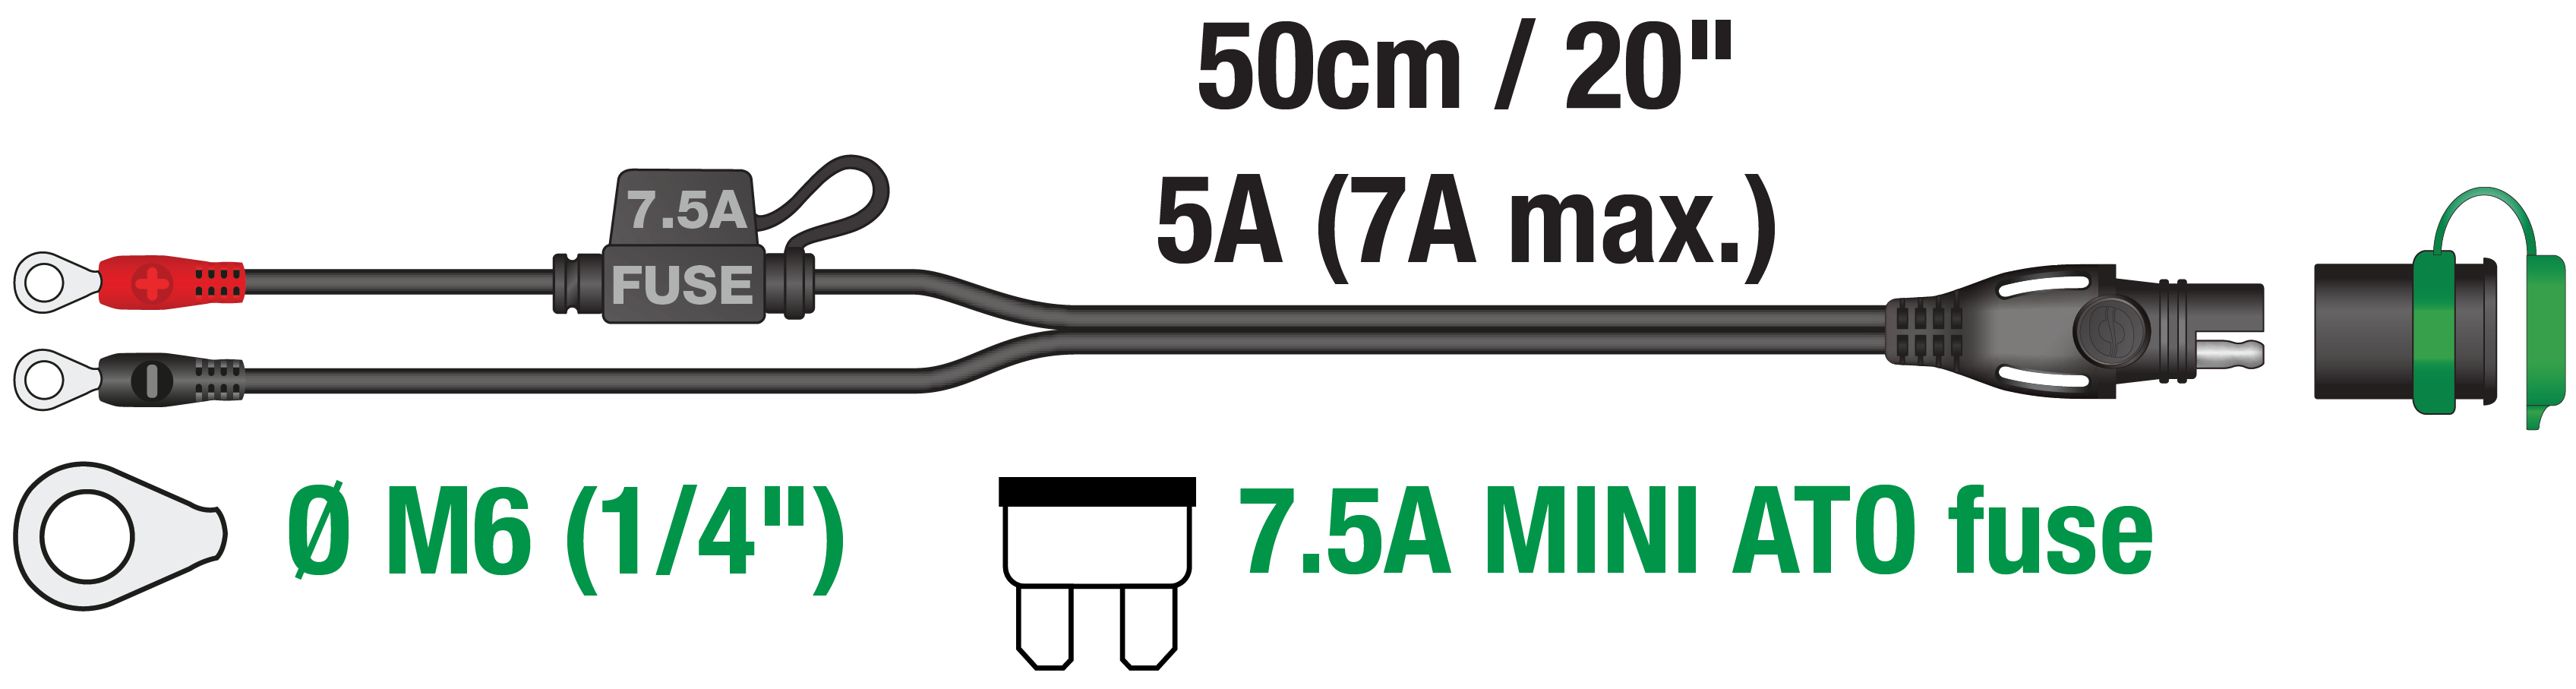 krulletjes die perfect passen op lithium power sport accupolen met 7,5A zekering die de -40° kabel en elektronica beschermt